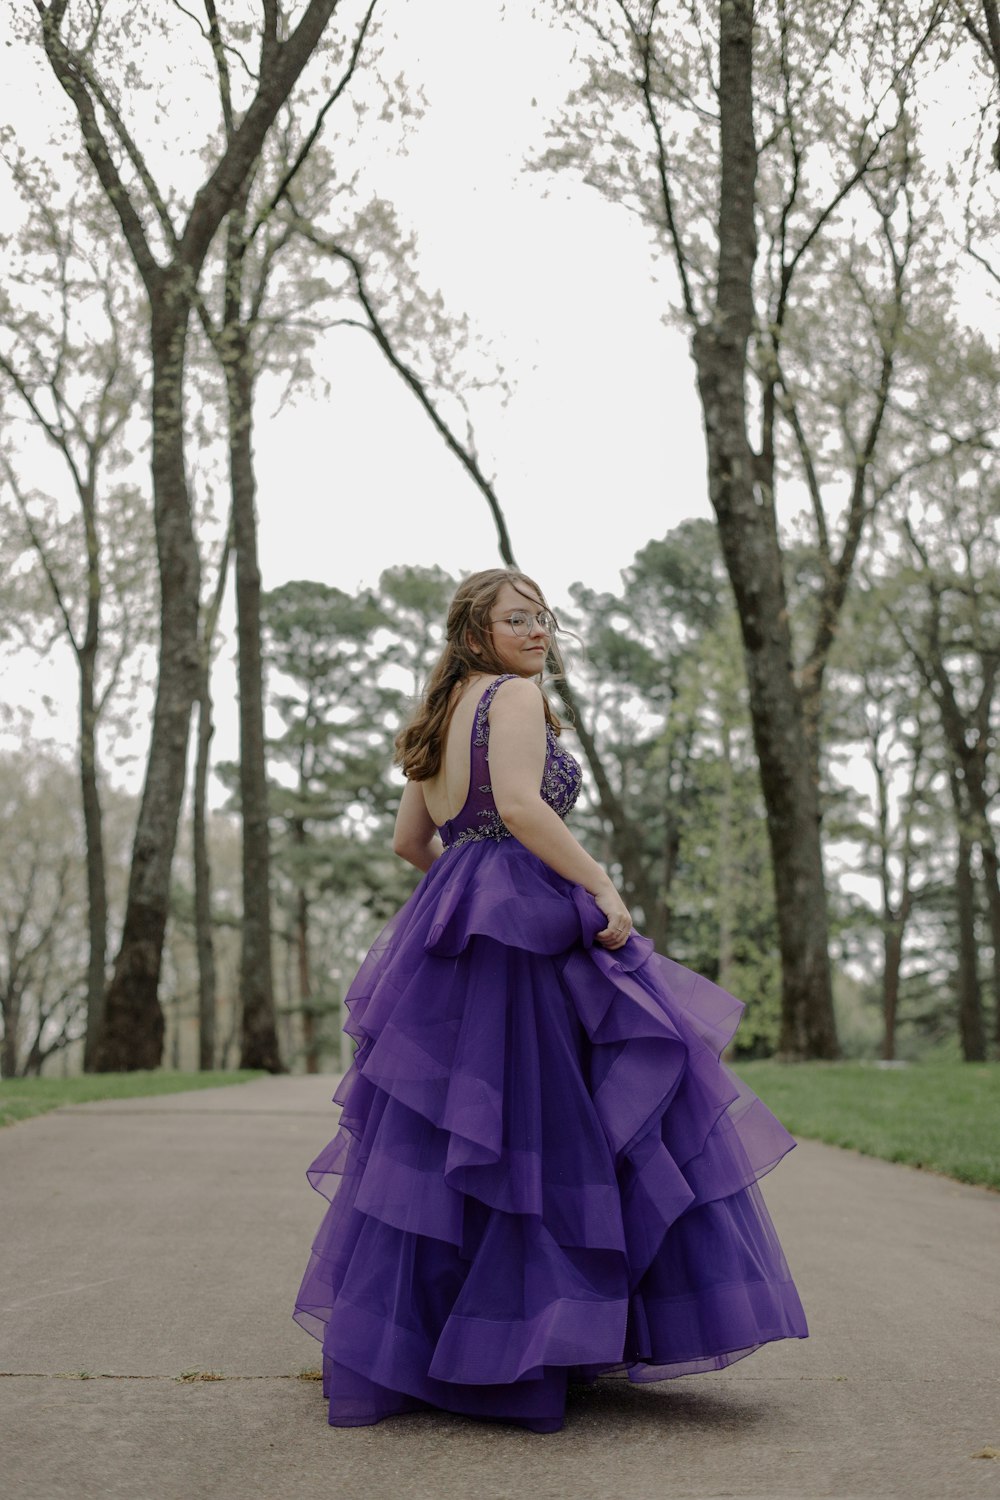 Eine Frau im lila Kleid